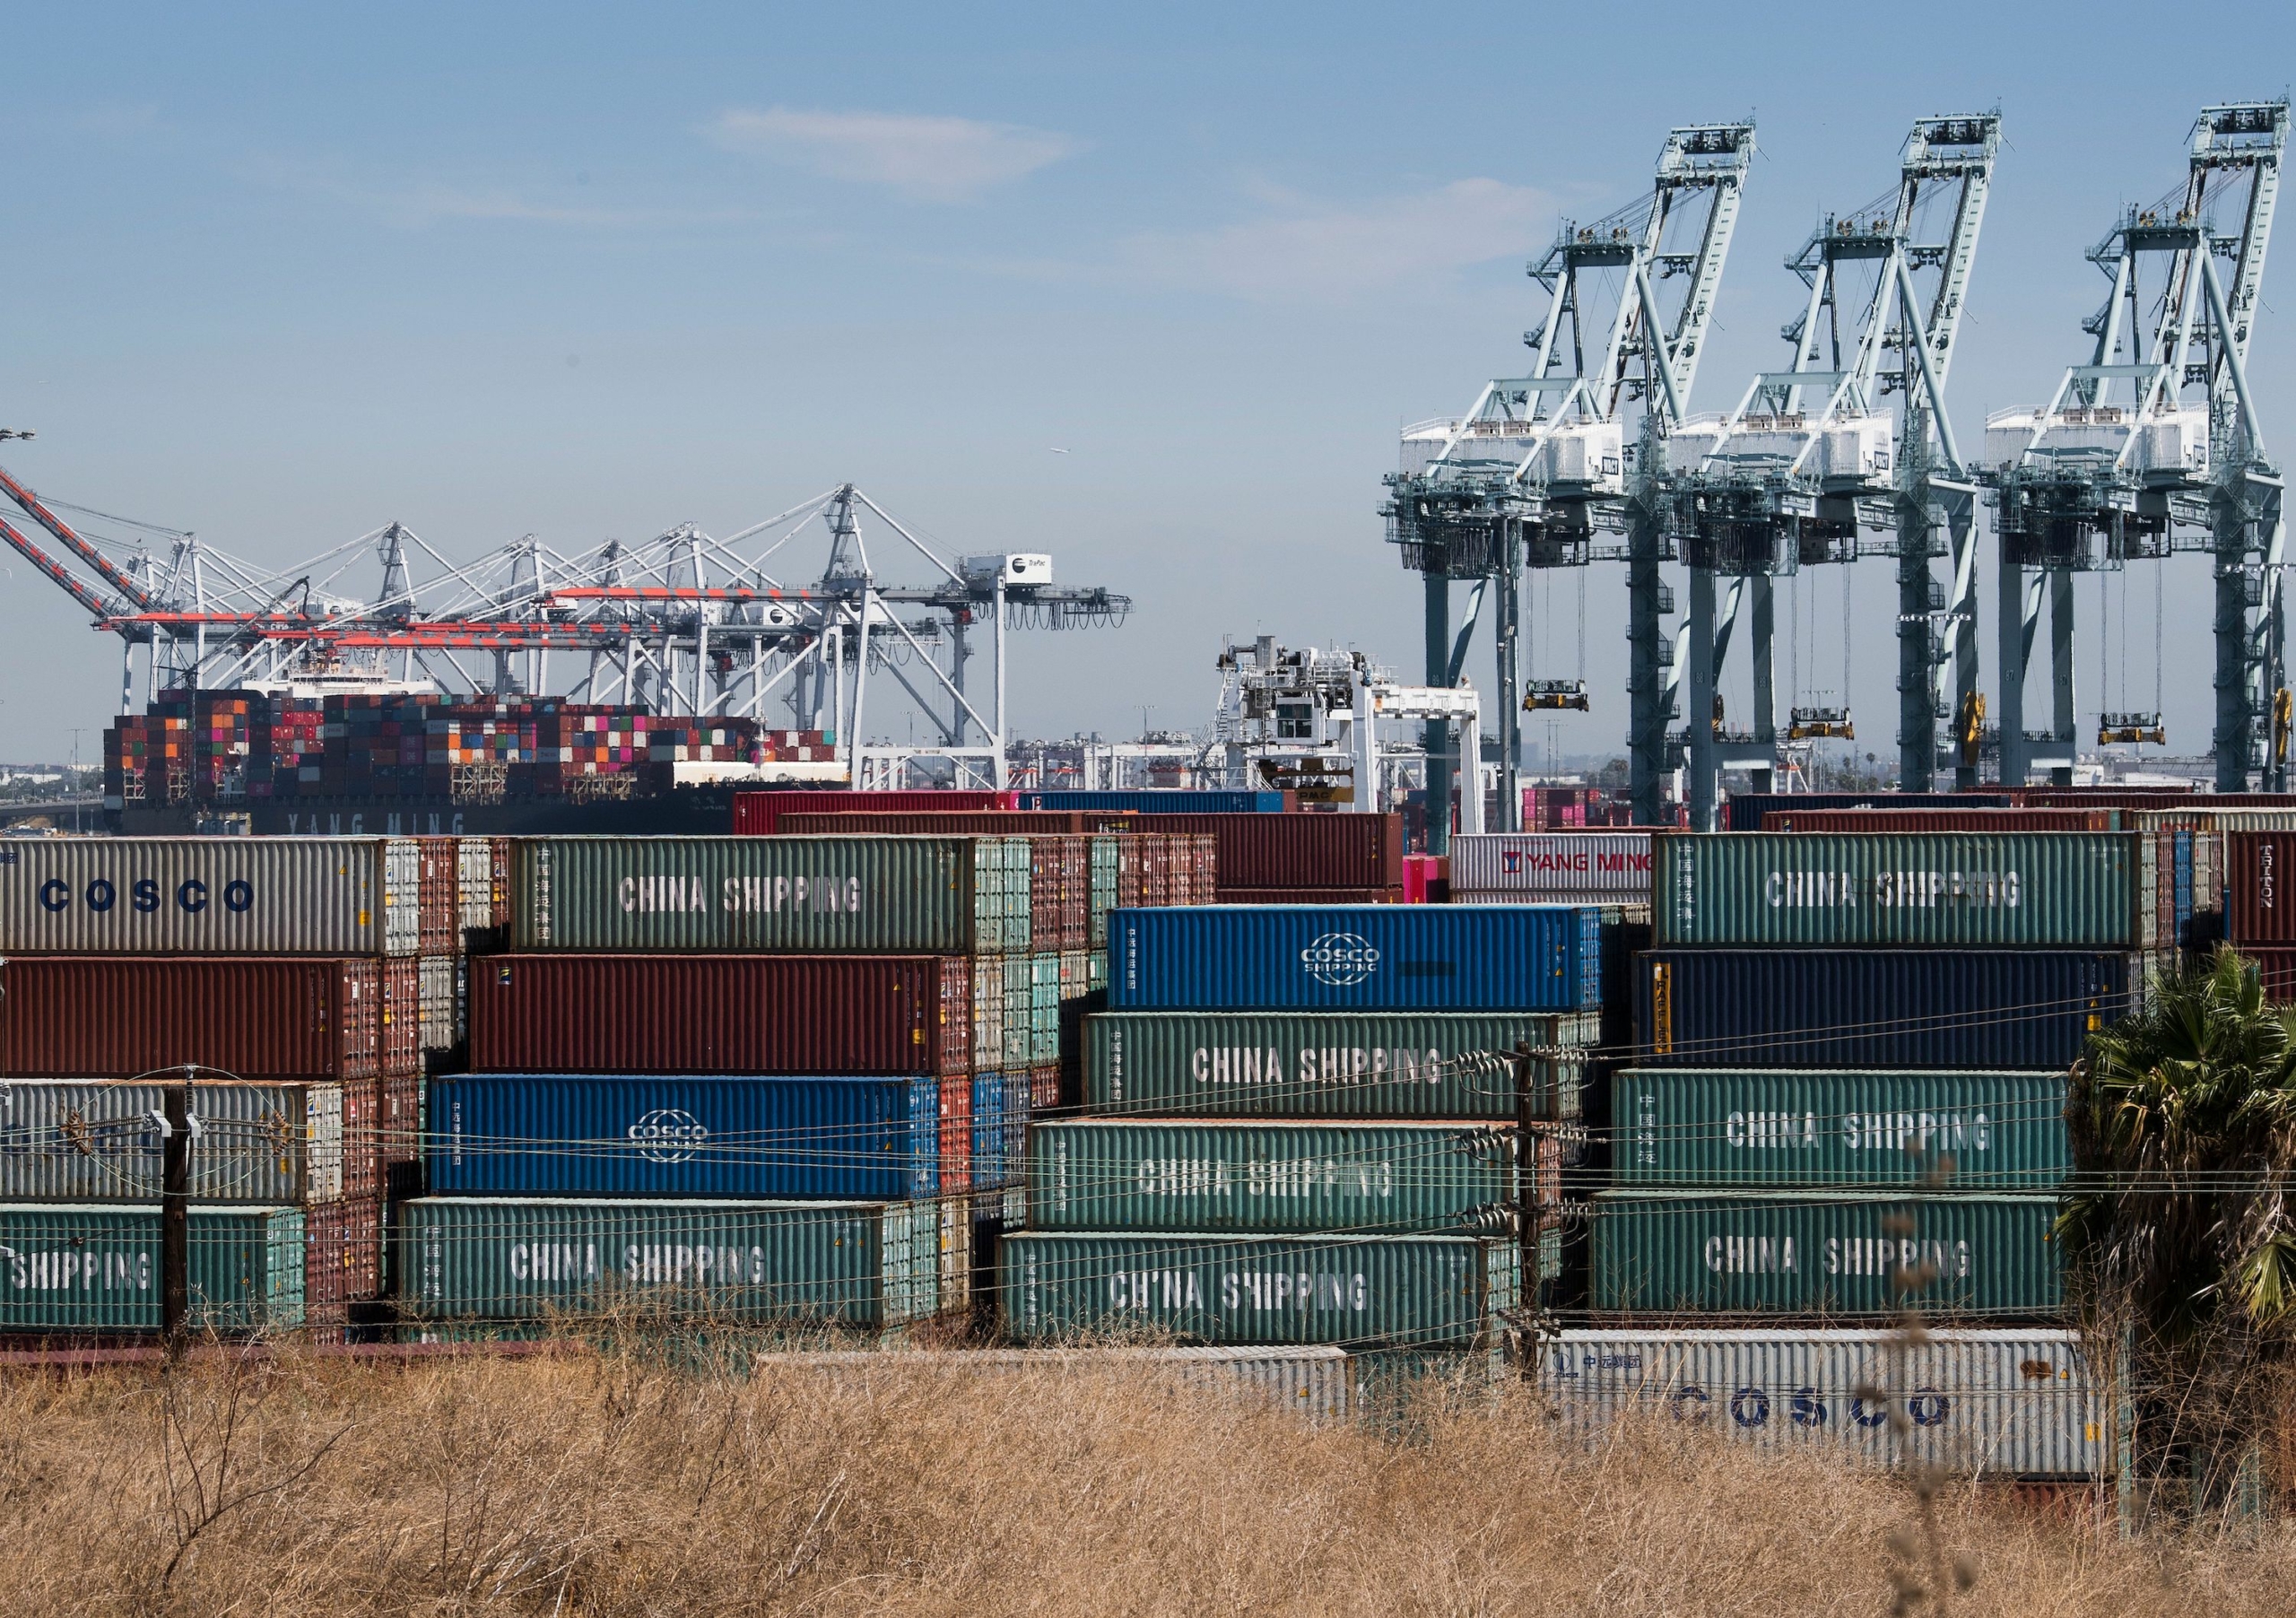 Các container vận chuyển từ Trung Quốc và các nước Á Châu khác được dỡ xuống tại cảng Los Angeles ở Long Beach, California, hôm 14/09/2019. (Ảnh: Mark Ralston/AFP/Getty Images)